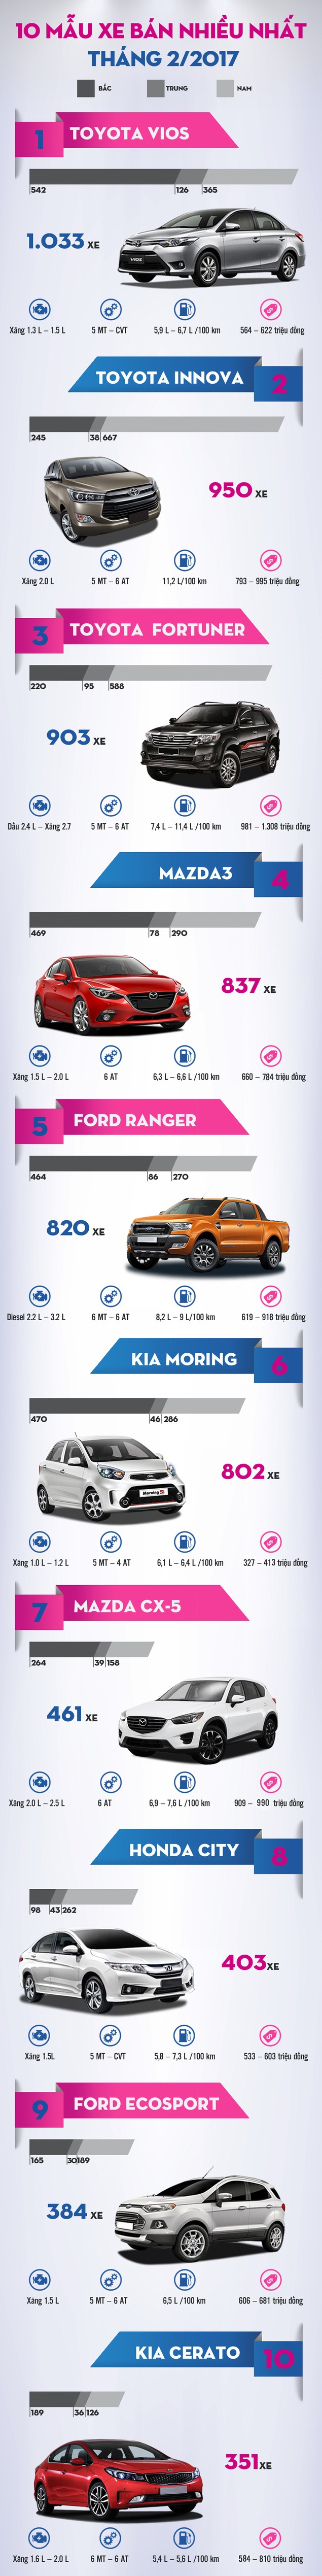 Những chiếc xe bán chạy nhất tại Việt Nam tháng 02/2017. Đồ họa: Dantri